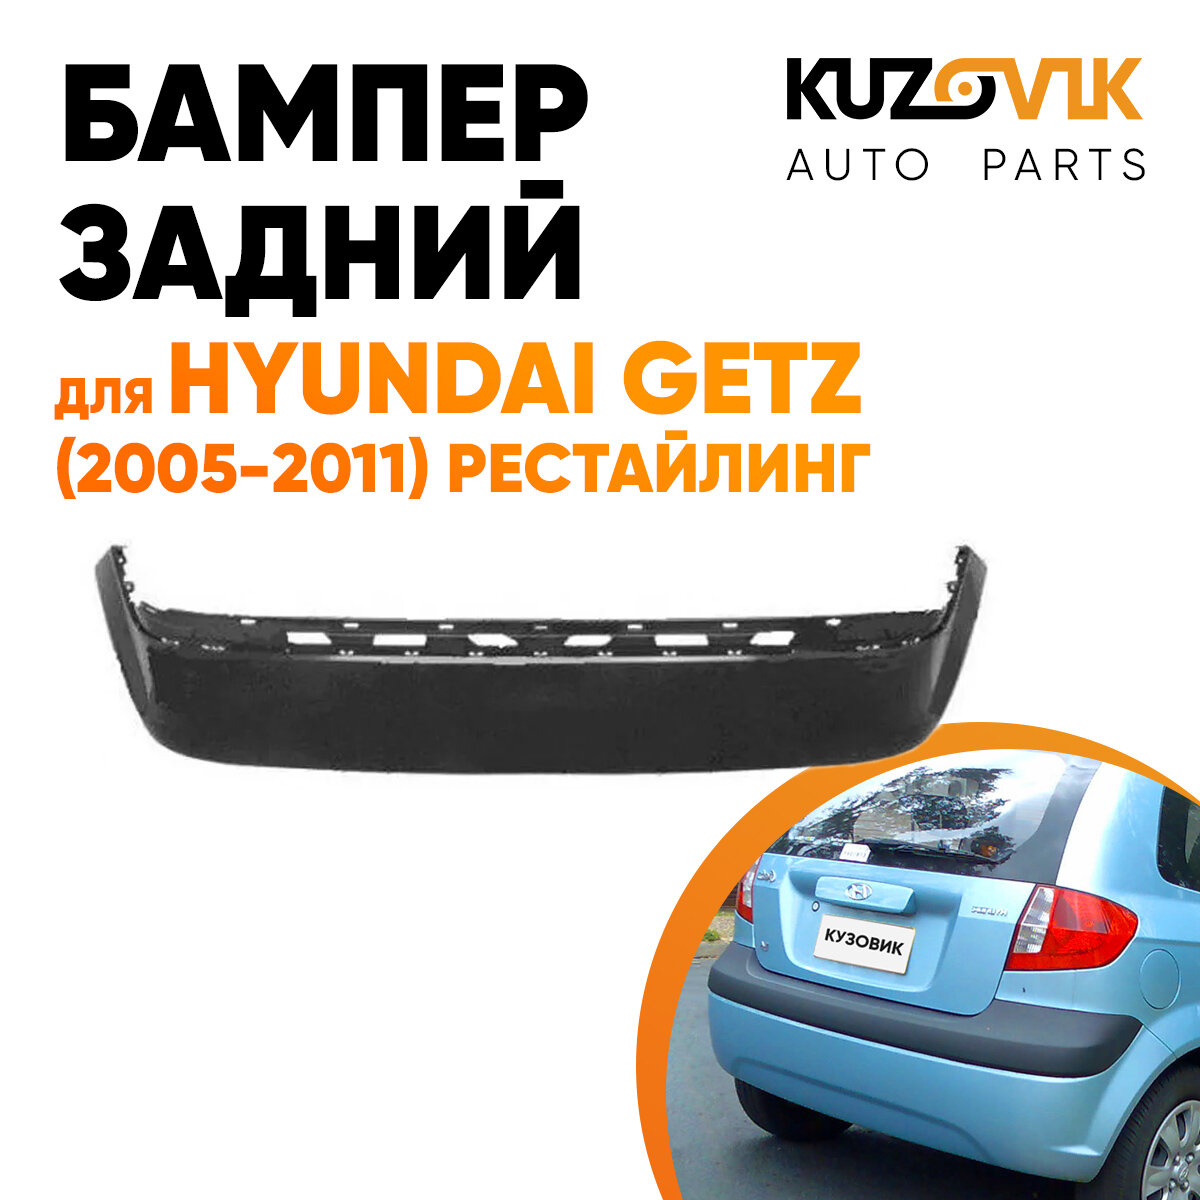 Бампер задний для Хендай Гетц Hyundai Getz (2005-2011) рестайлинг без отверстия под птф